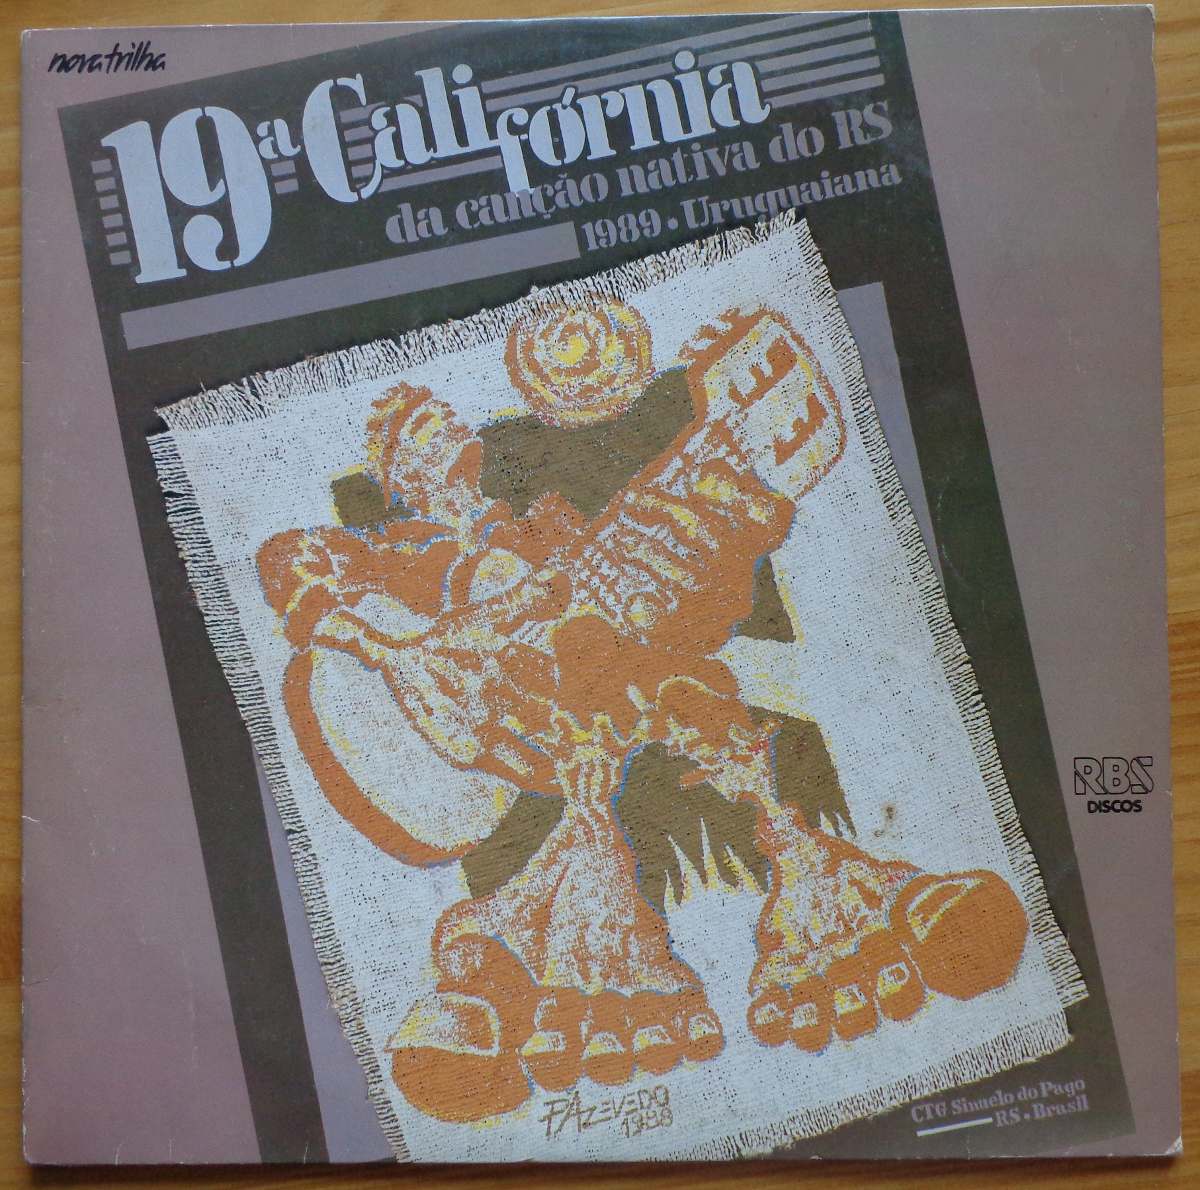 LP 19ª Califórnia da Canção Nativa